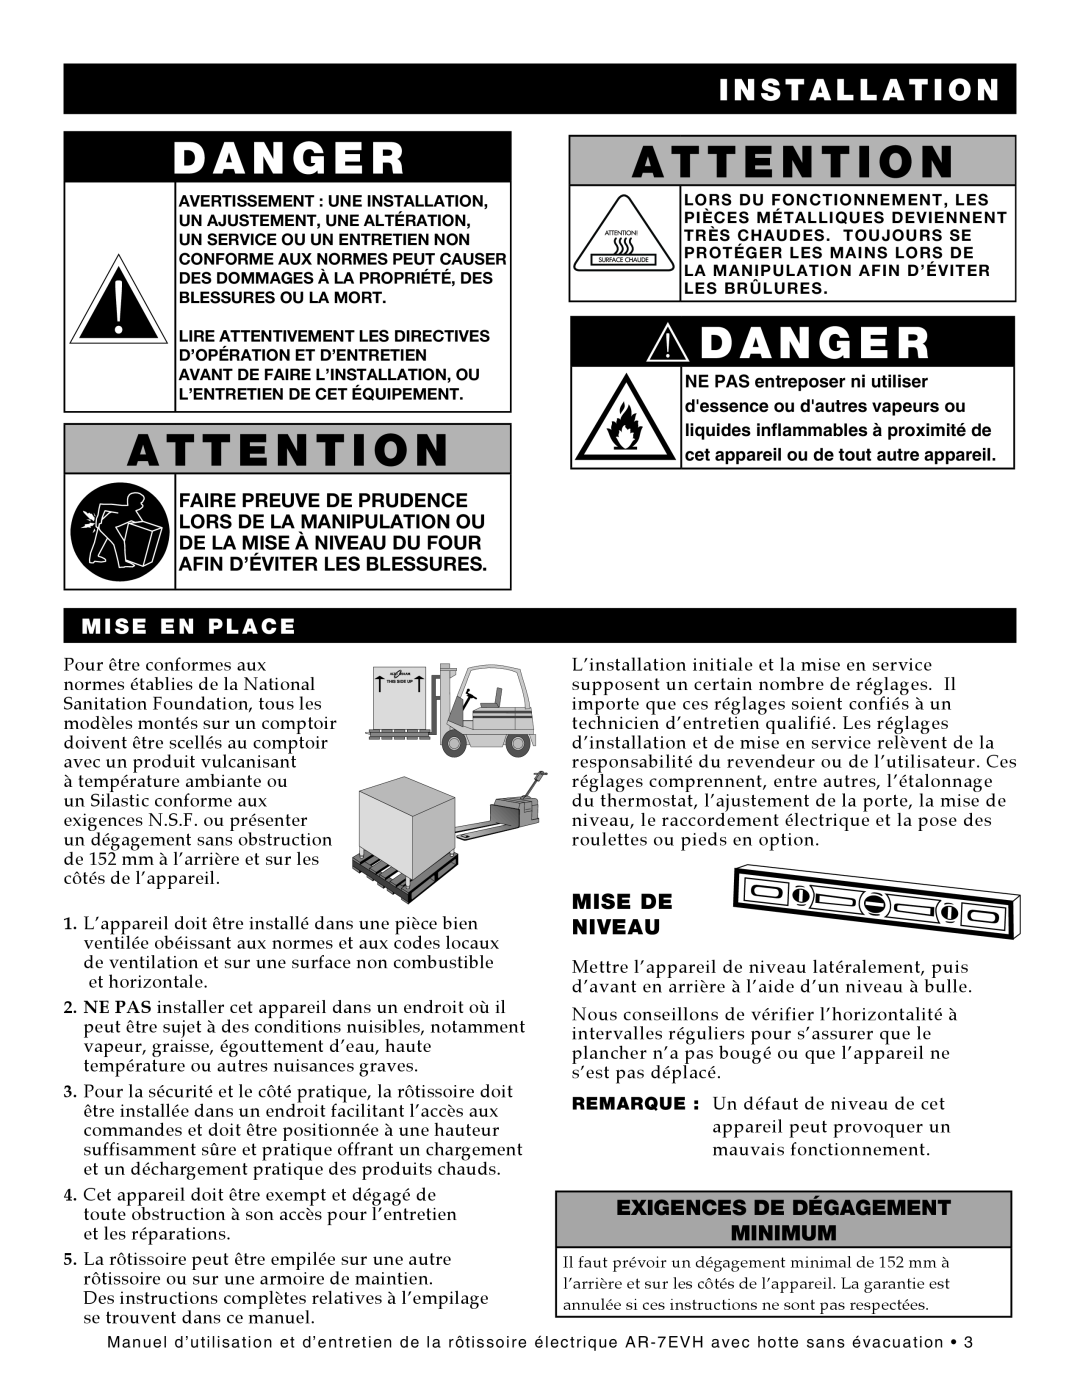 Alto-Shaam ar-7evh manual Danger, I N S T A L L A T I O N, Mise En Place, Mise De Niveau, Exigences De Dégagement Minimum 